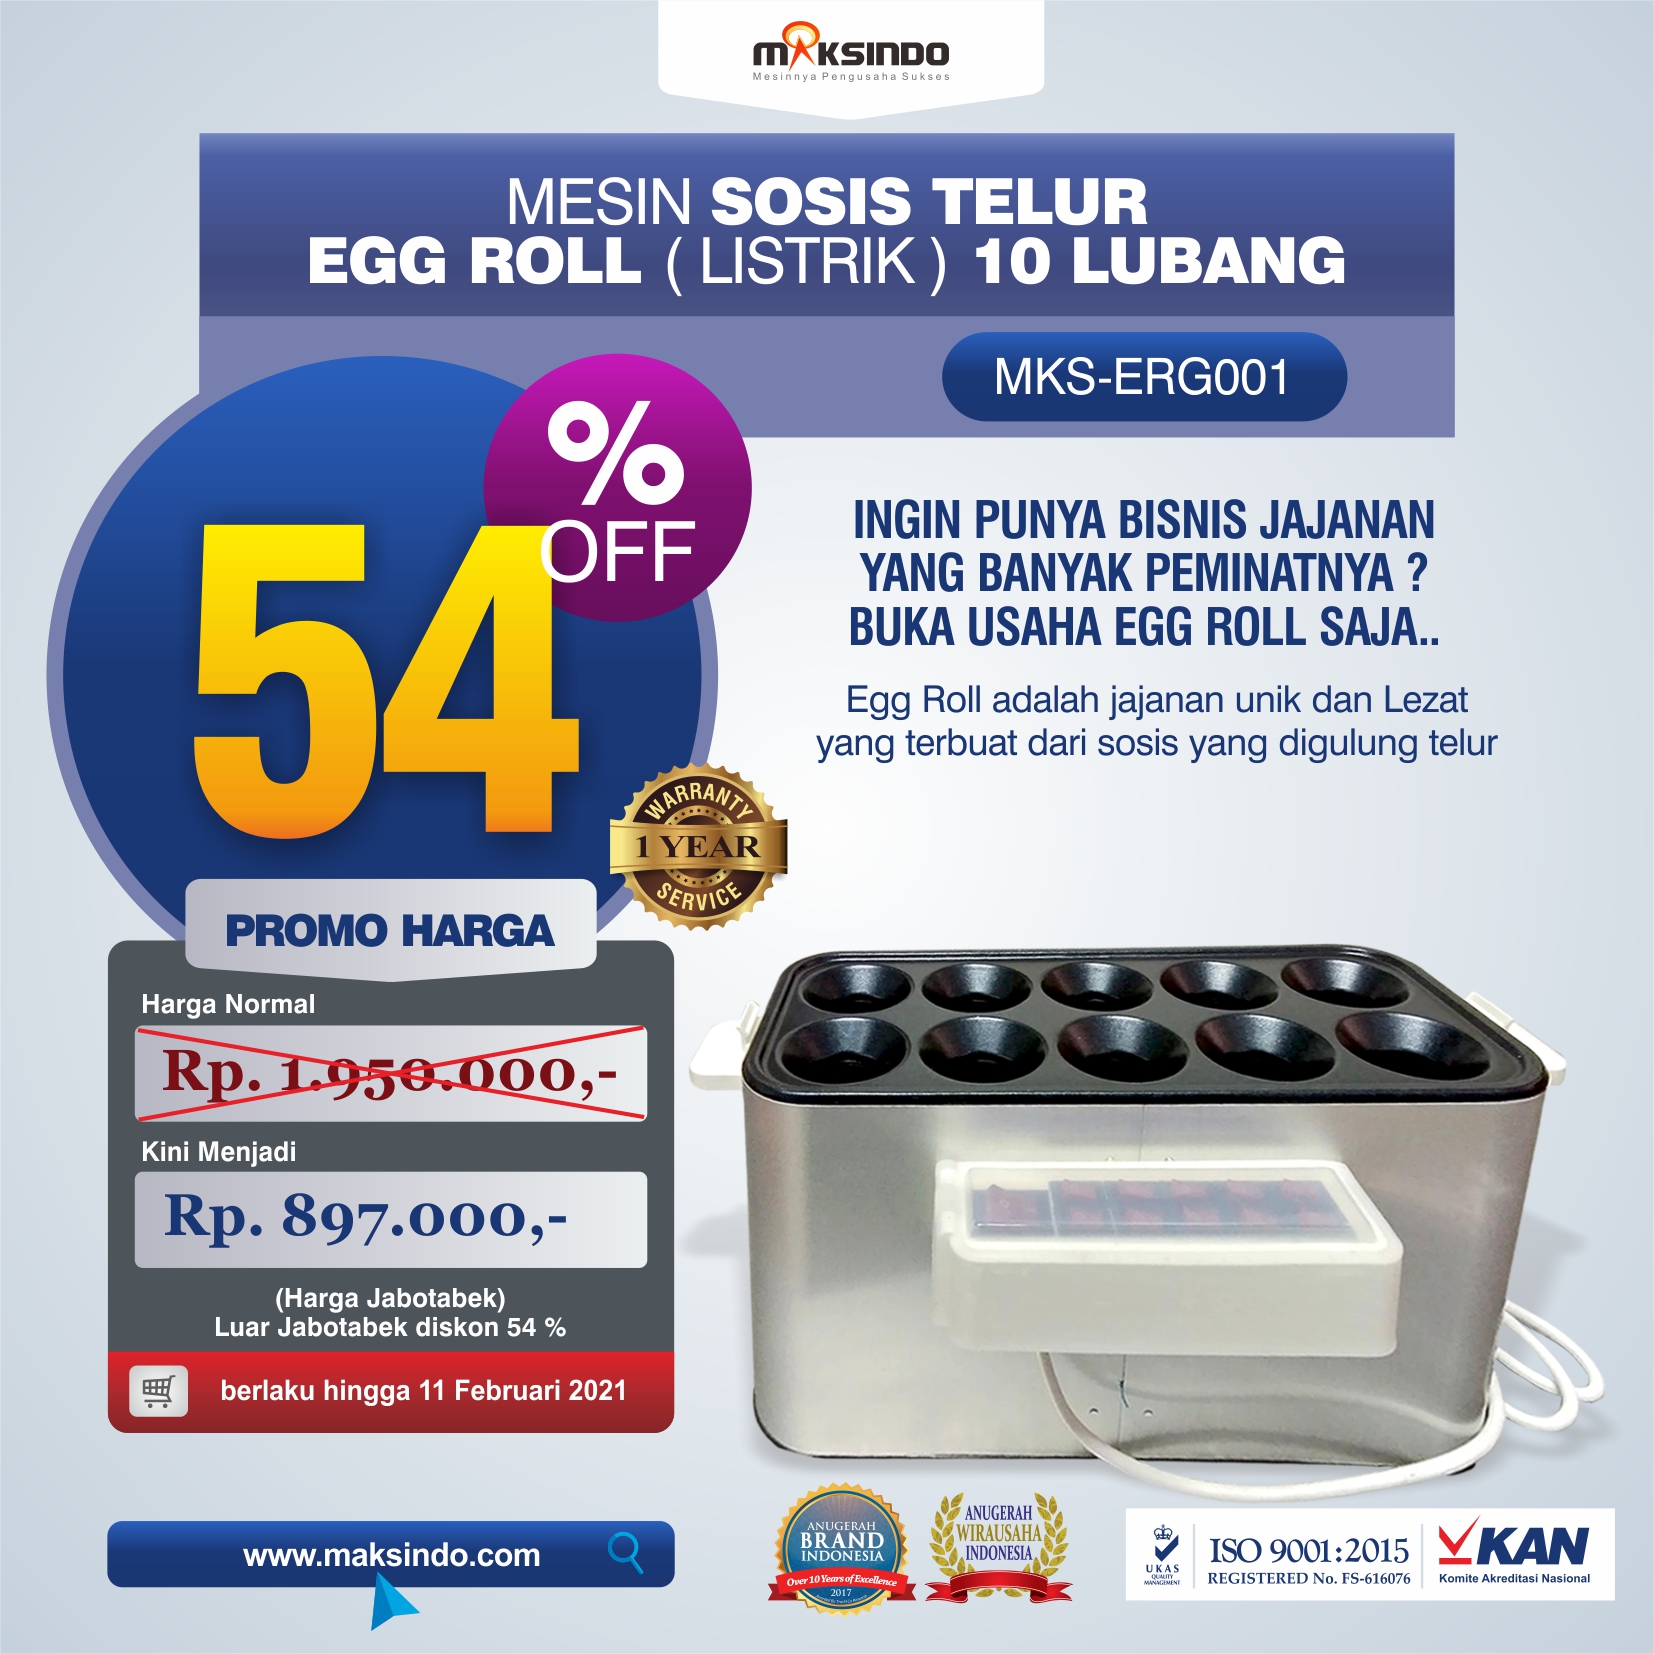 Jual Mesin Pembuat Egg Roll (Listrik) – MKS-ERG001 di Solo